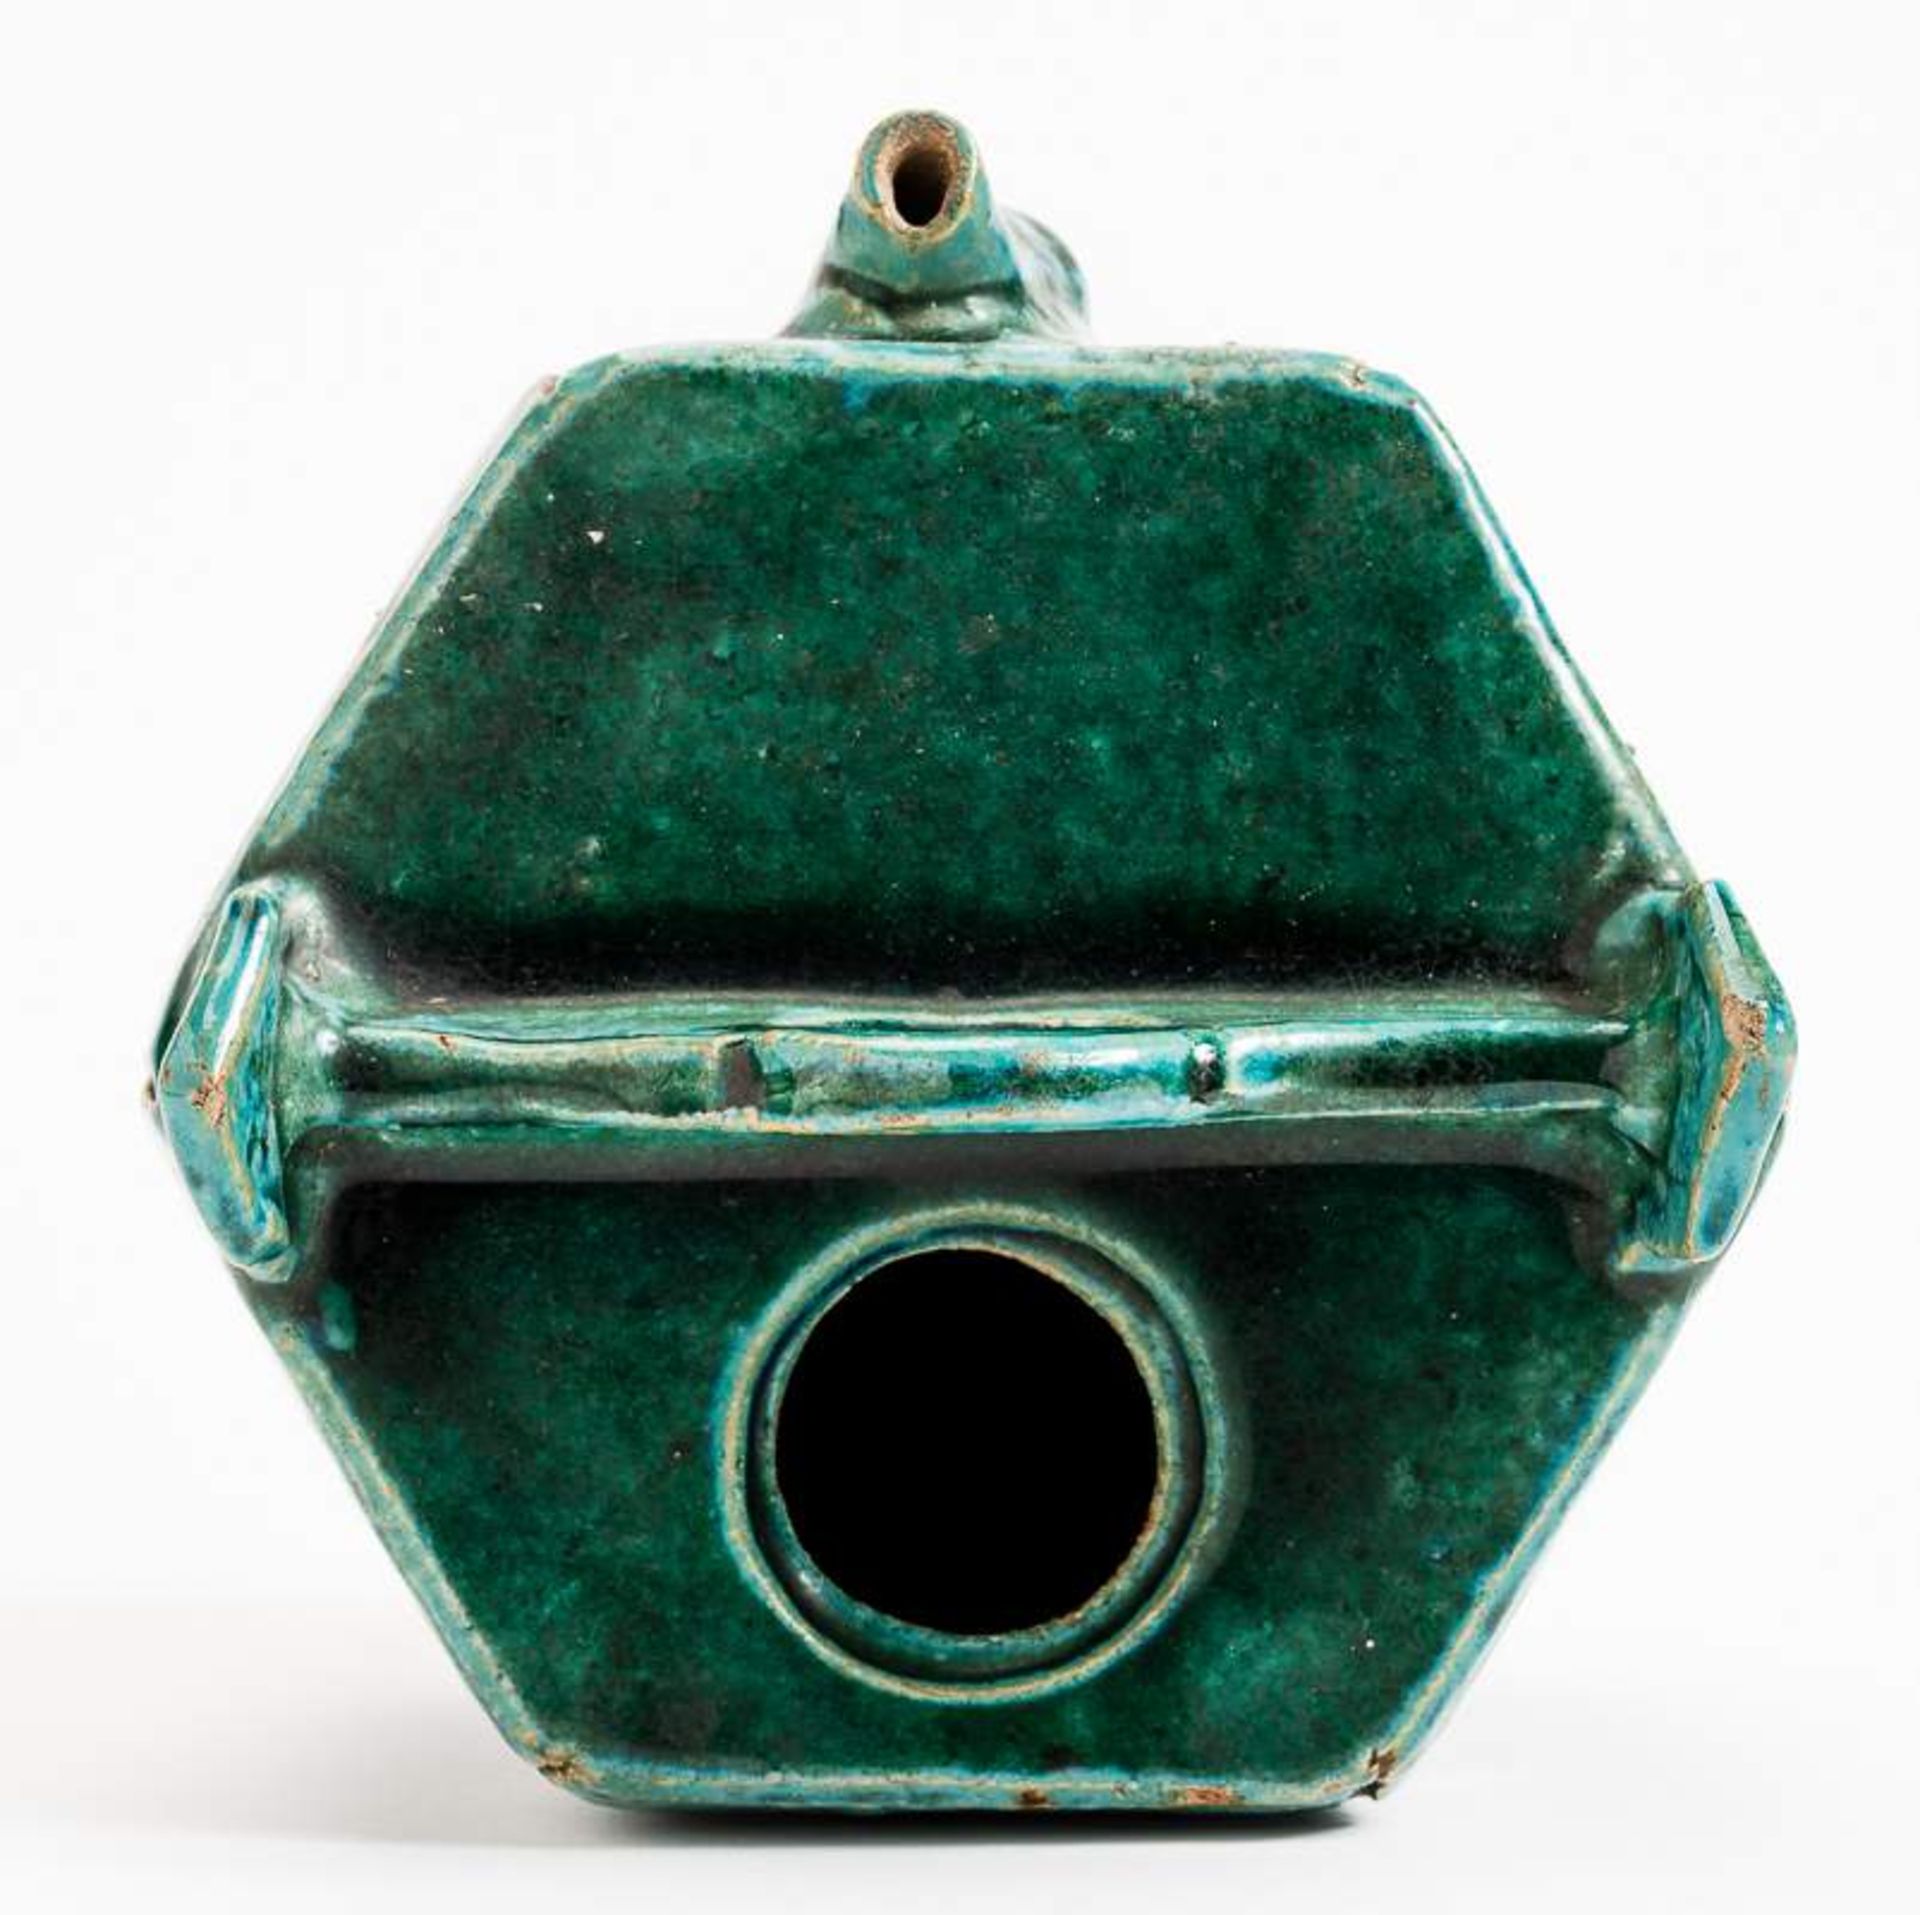 GEFÄSS IN FORM EINES WASSEREIMERS Grün glasierte Keramik. China, Qing, vermutlich 17. Jh. Dieses - Image 7 of 15